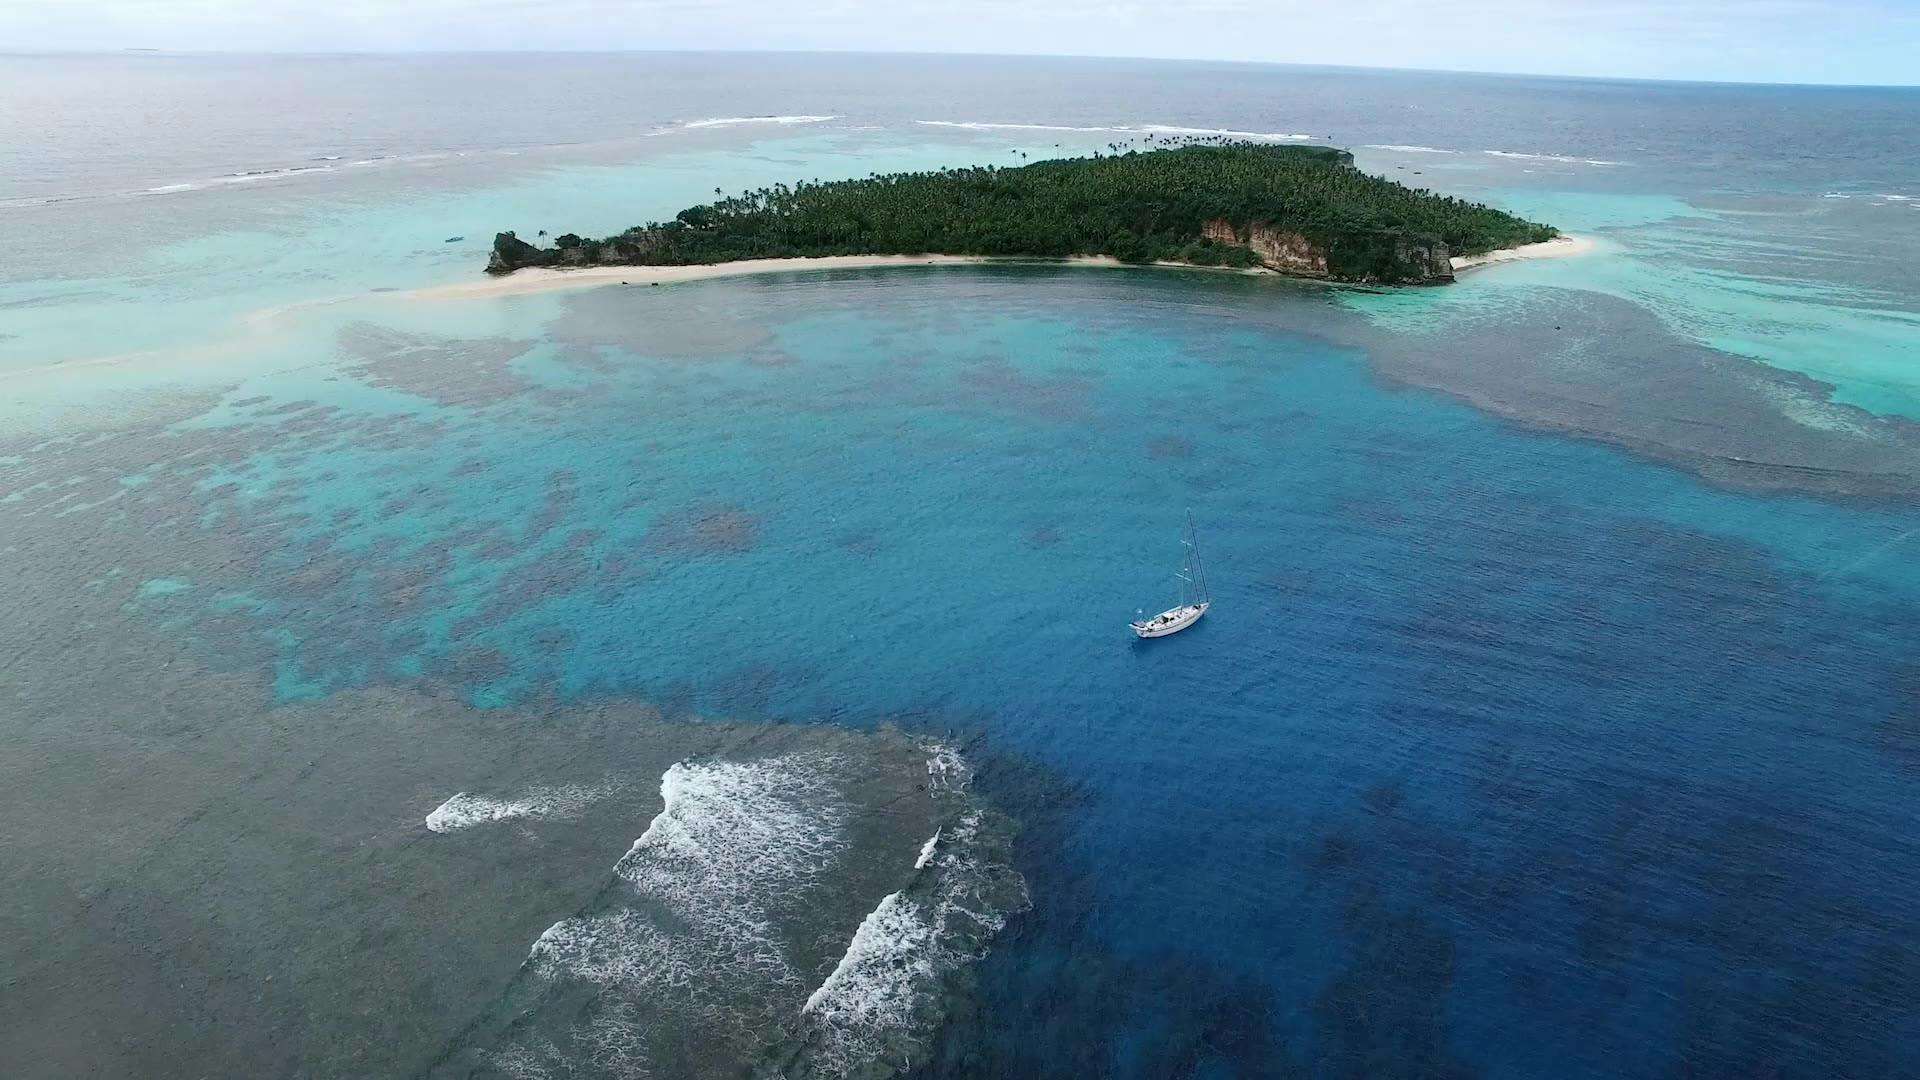 Ep 2 | Tonga & Lofi's Island